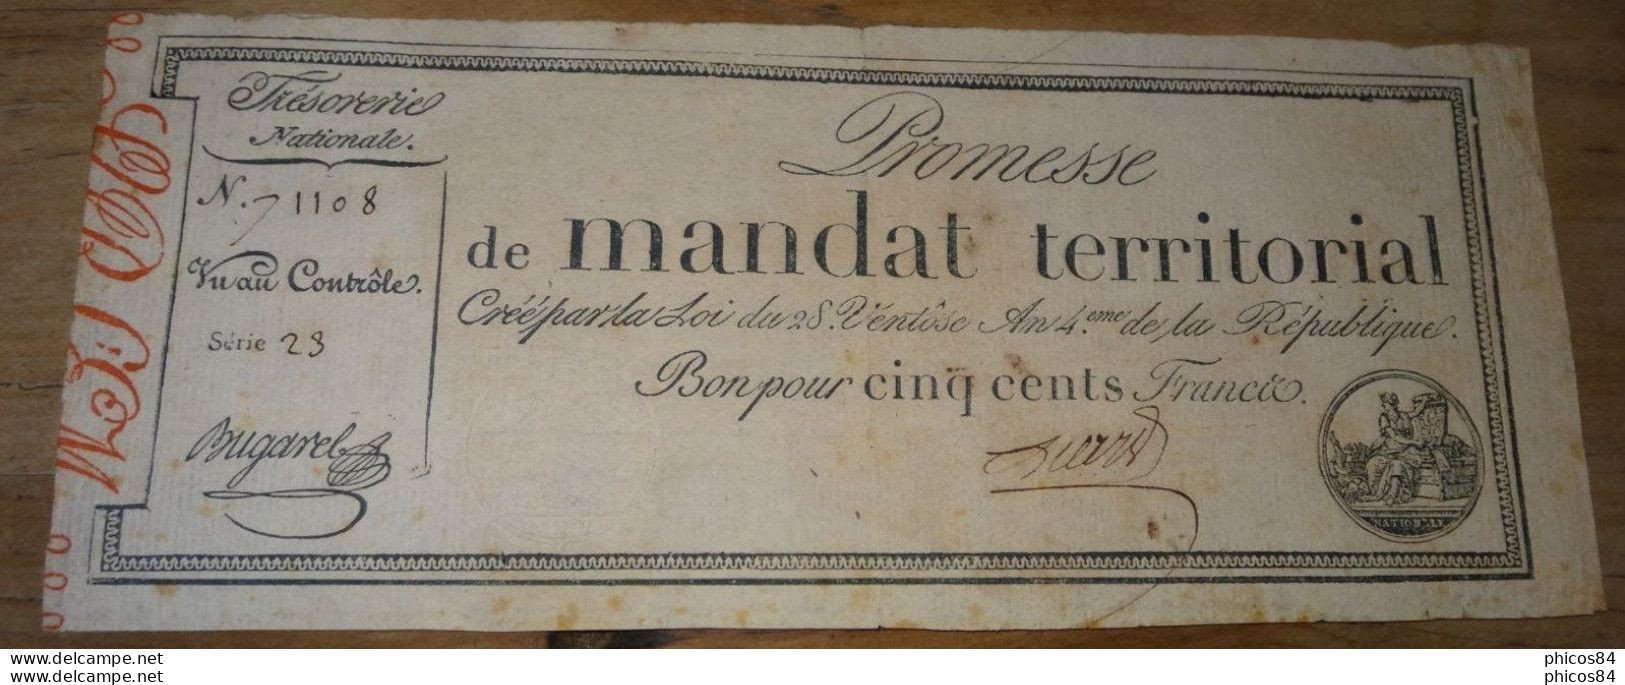 Exceptionnel Mandat Territorial 500 Francs De La Série 23 Avec Un Numéro Supérieur A 50000 - Assignate